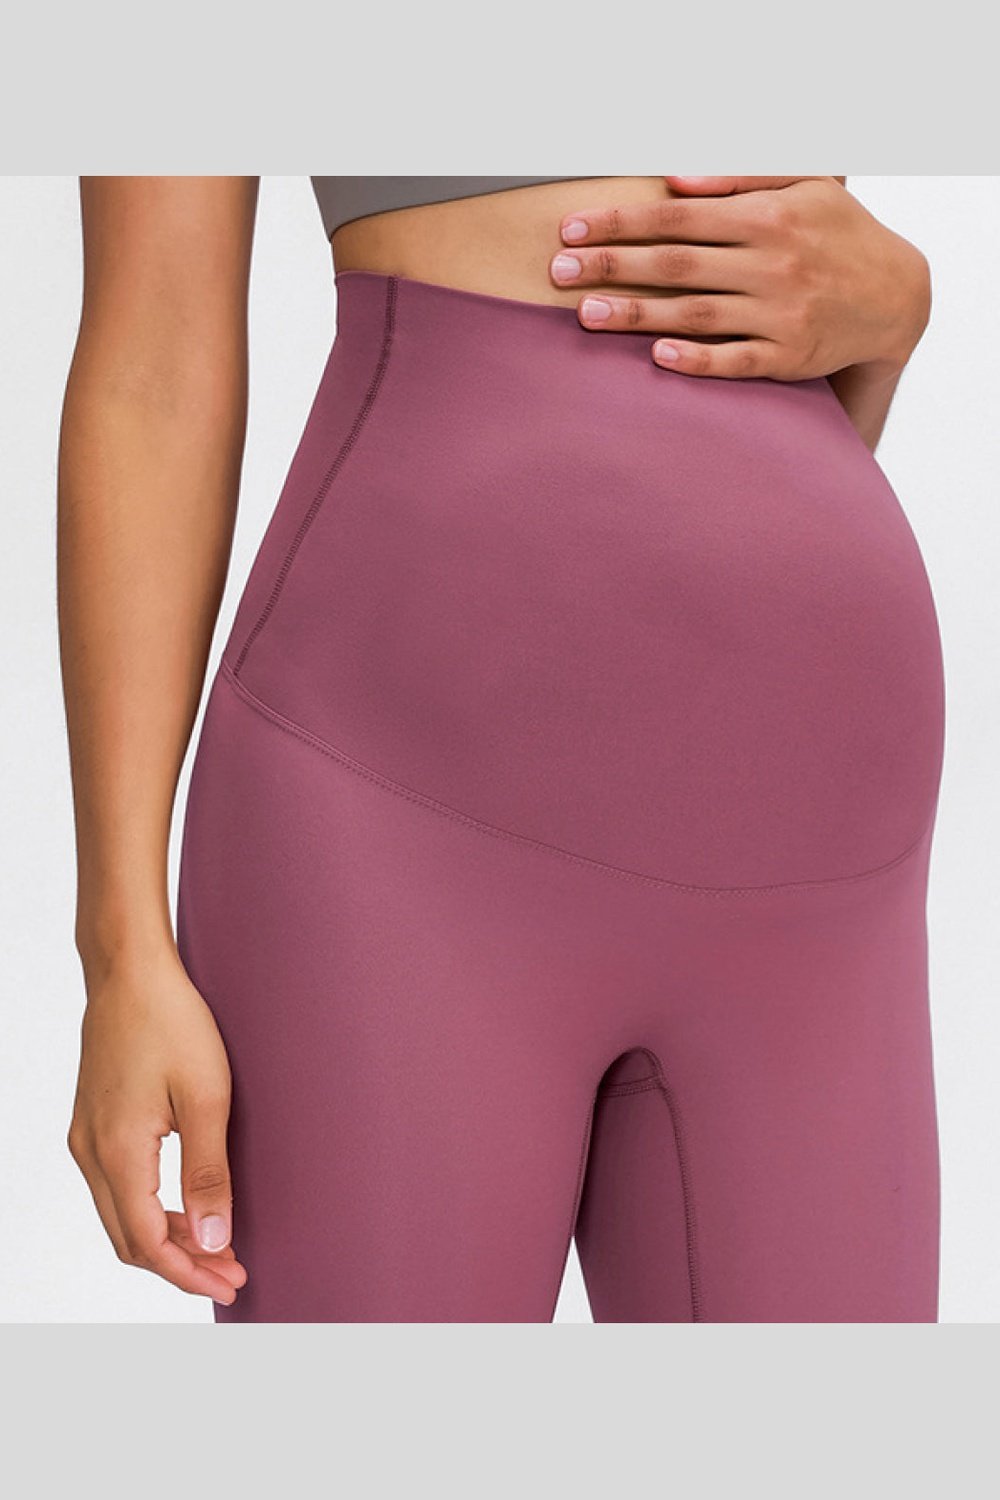 Maternity Yoga Pants - Leggings - FITGGINS